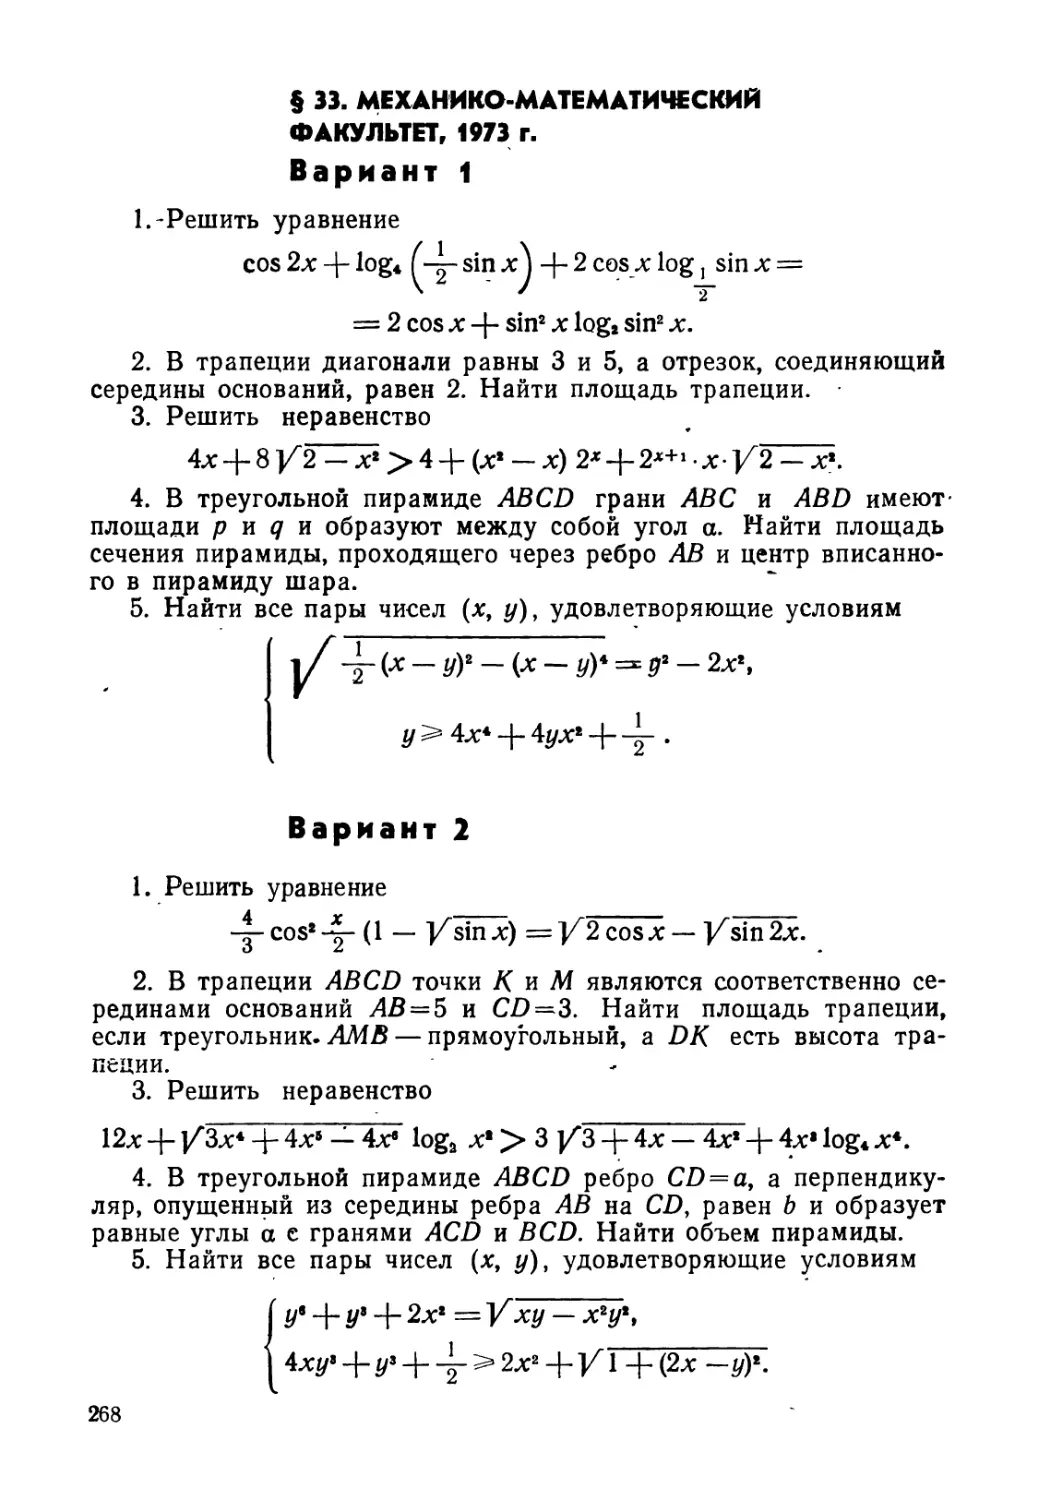 § 33. Механико-математический факультет, 1973 г